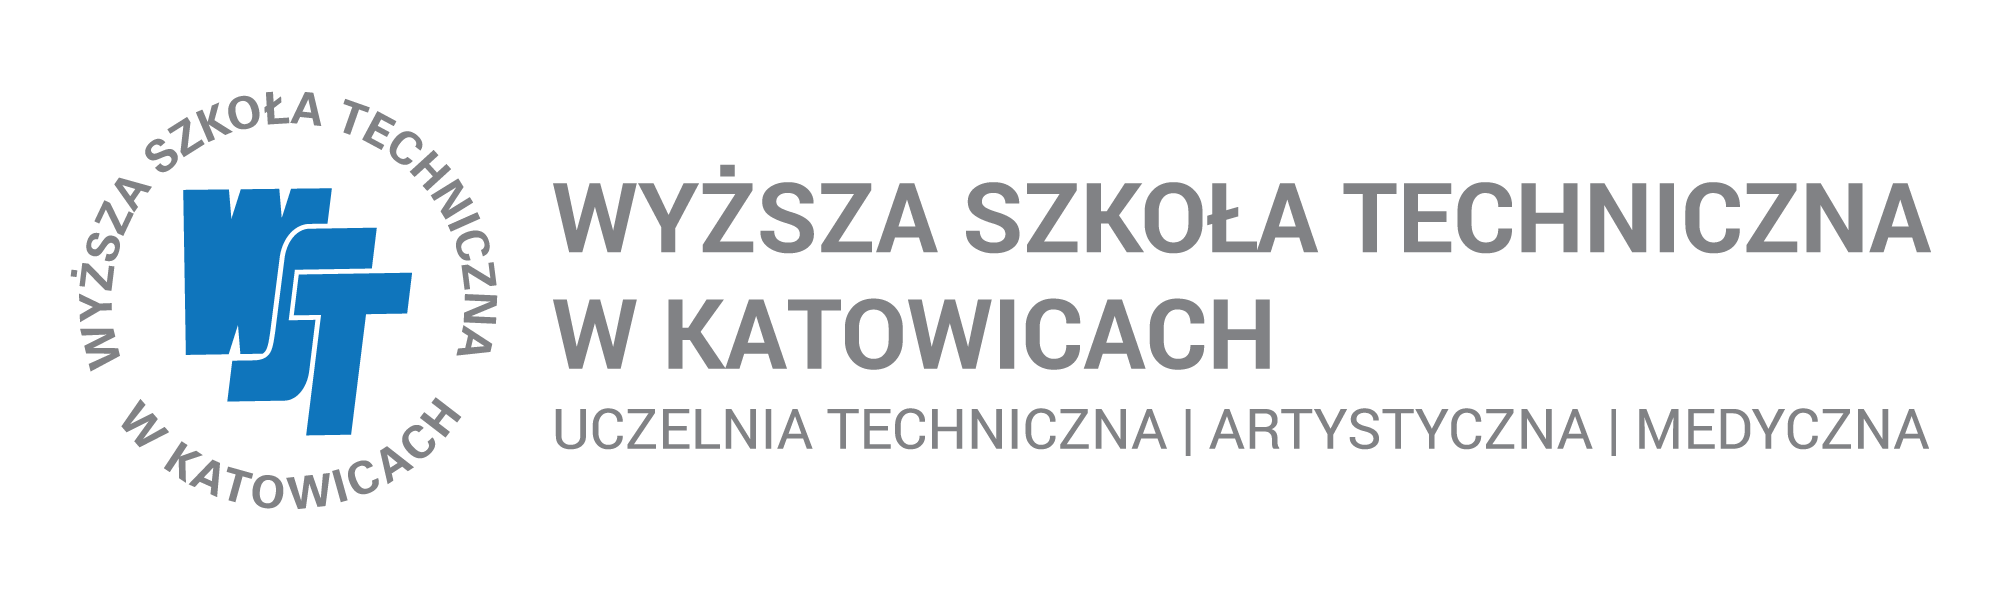 Logo uczelni - rozbudowane